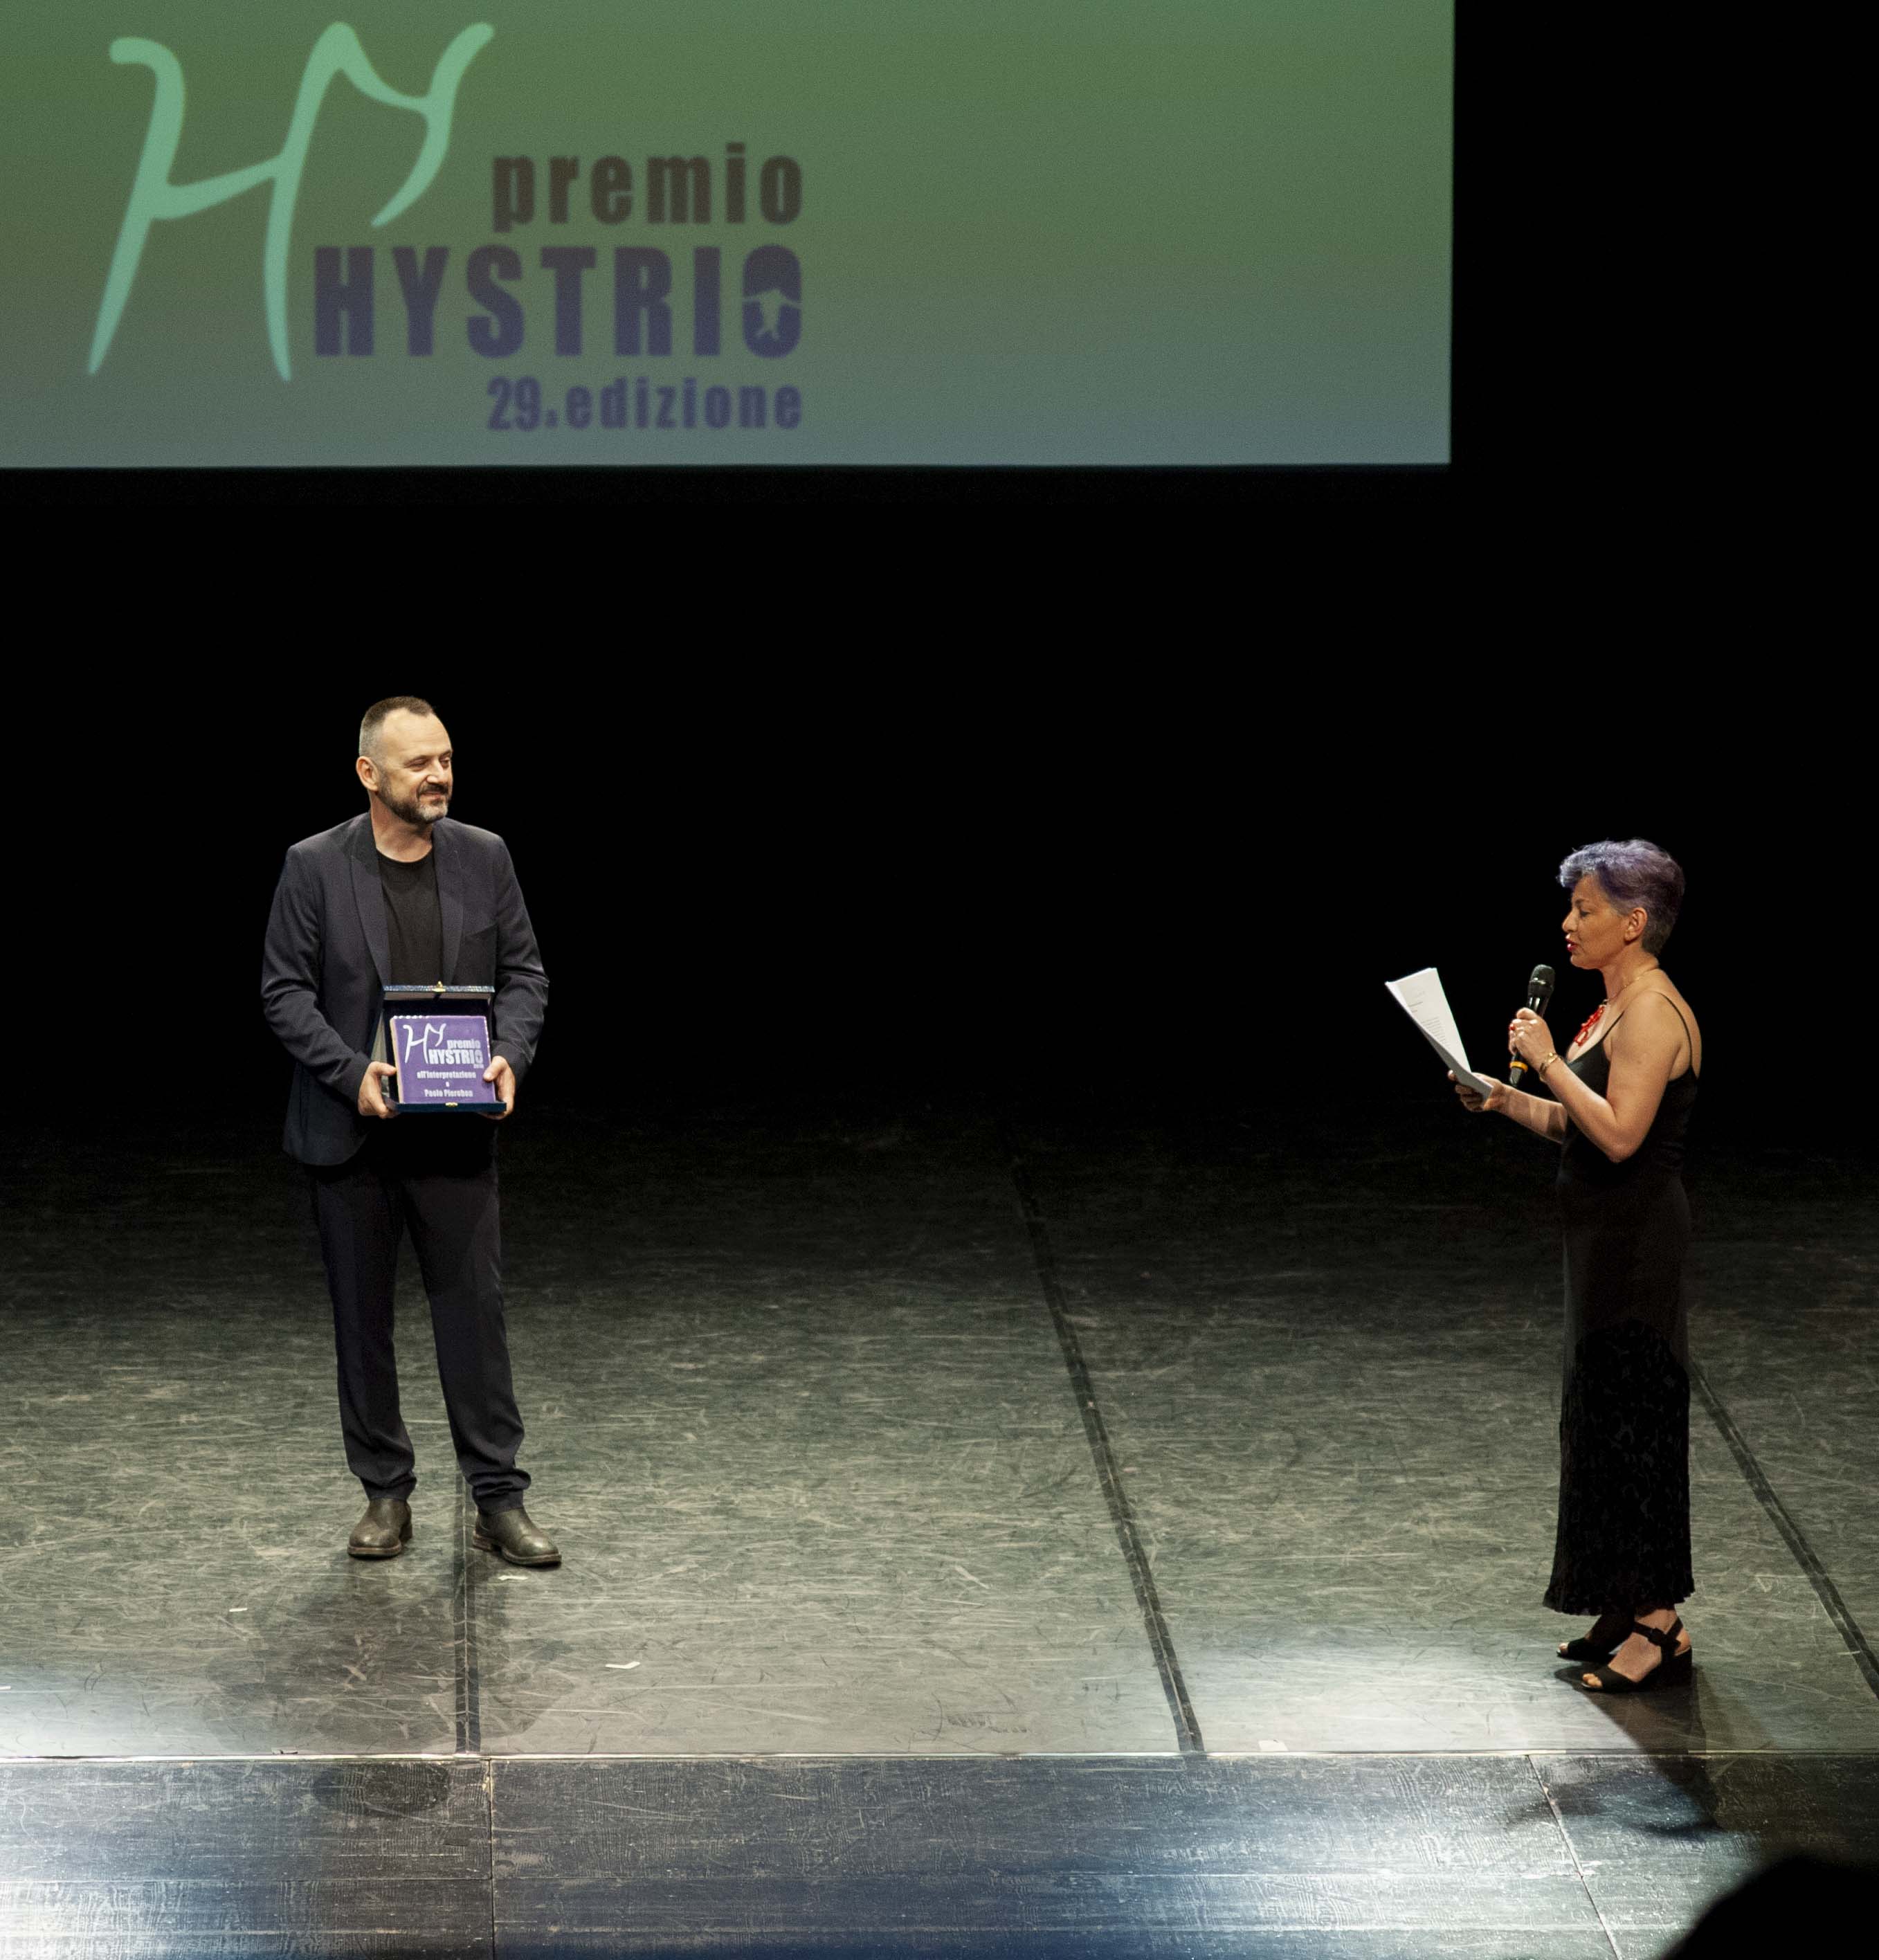 Premio Hystrio 2019 all\